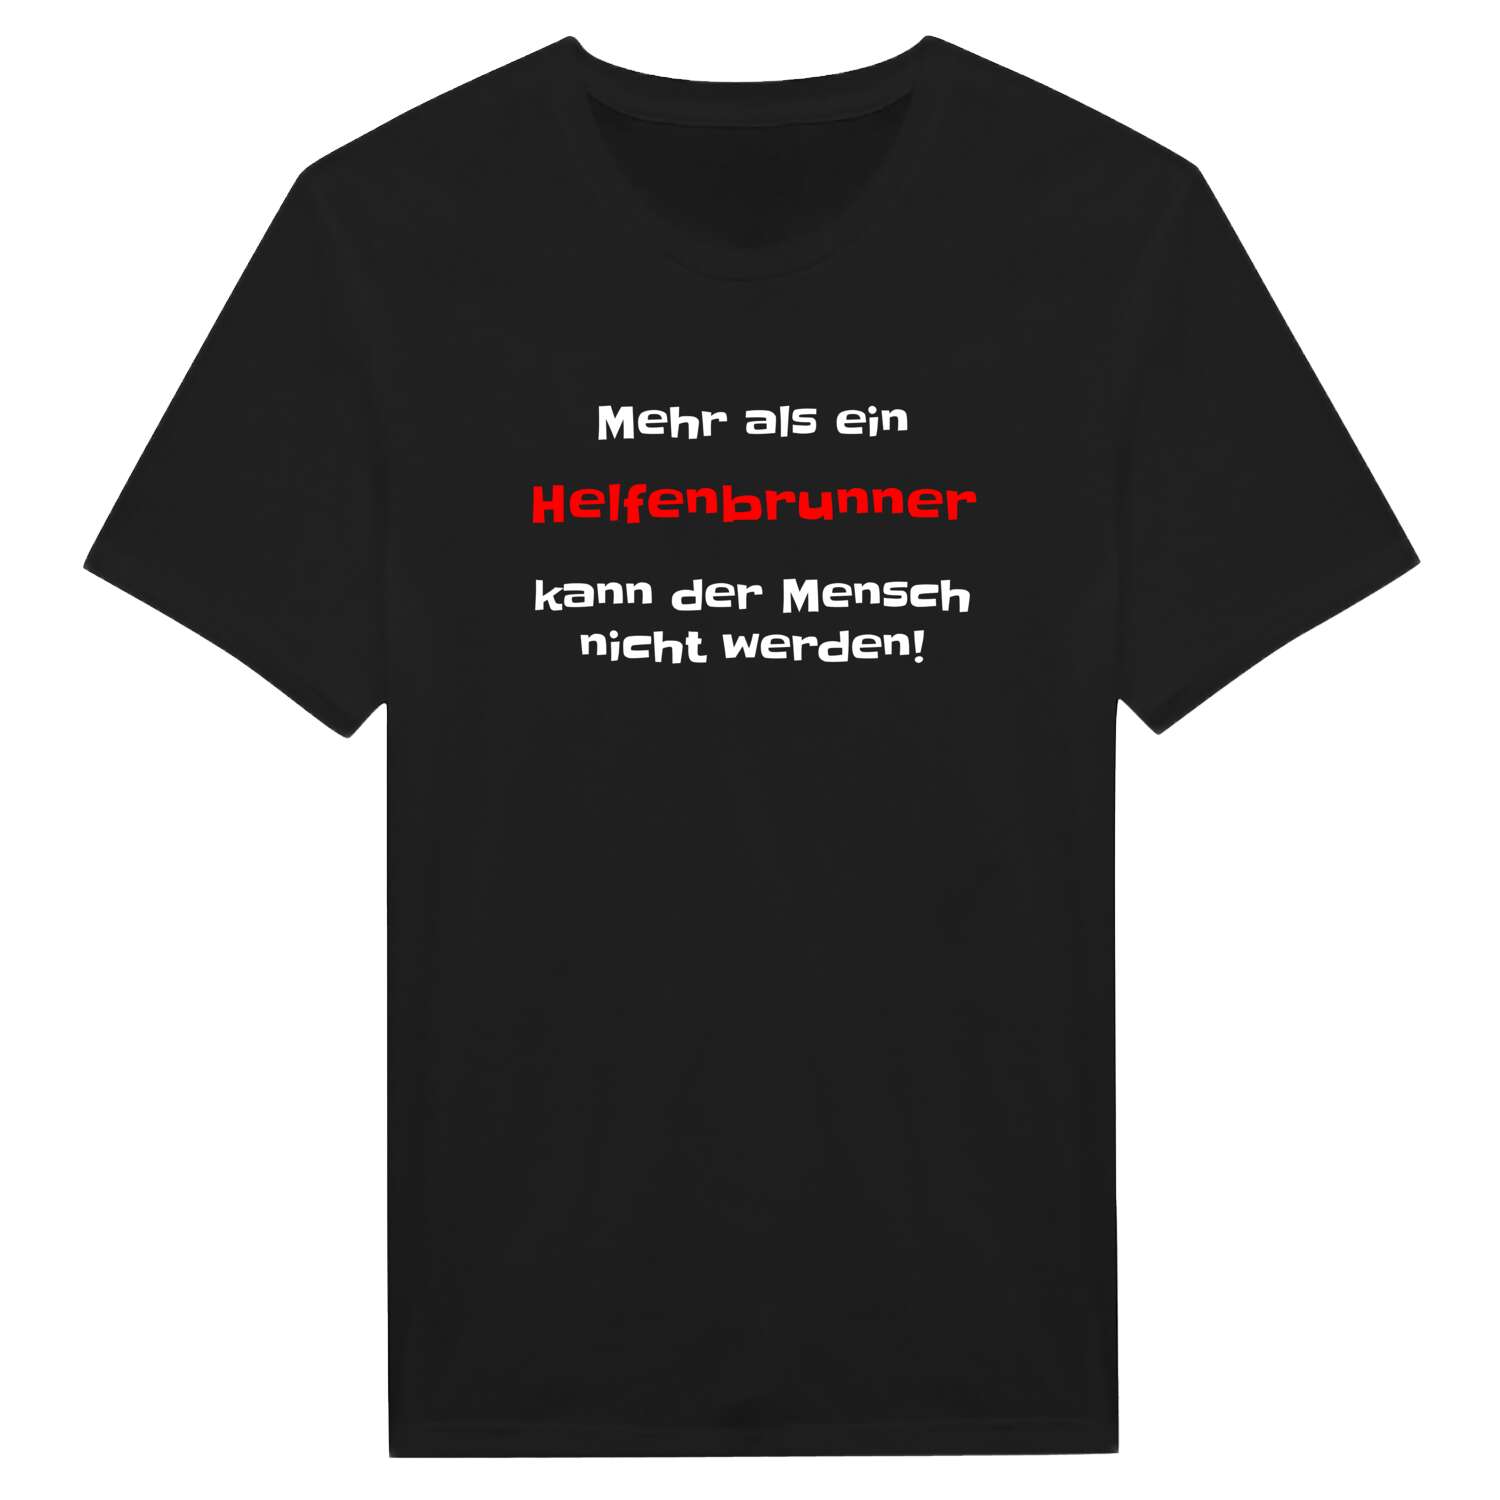 Helfenbrunn T-Shirt »Mehr als ein«